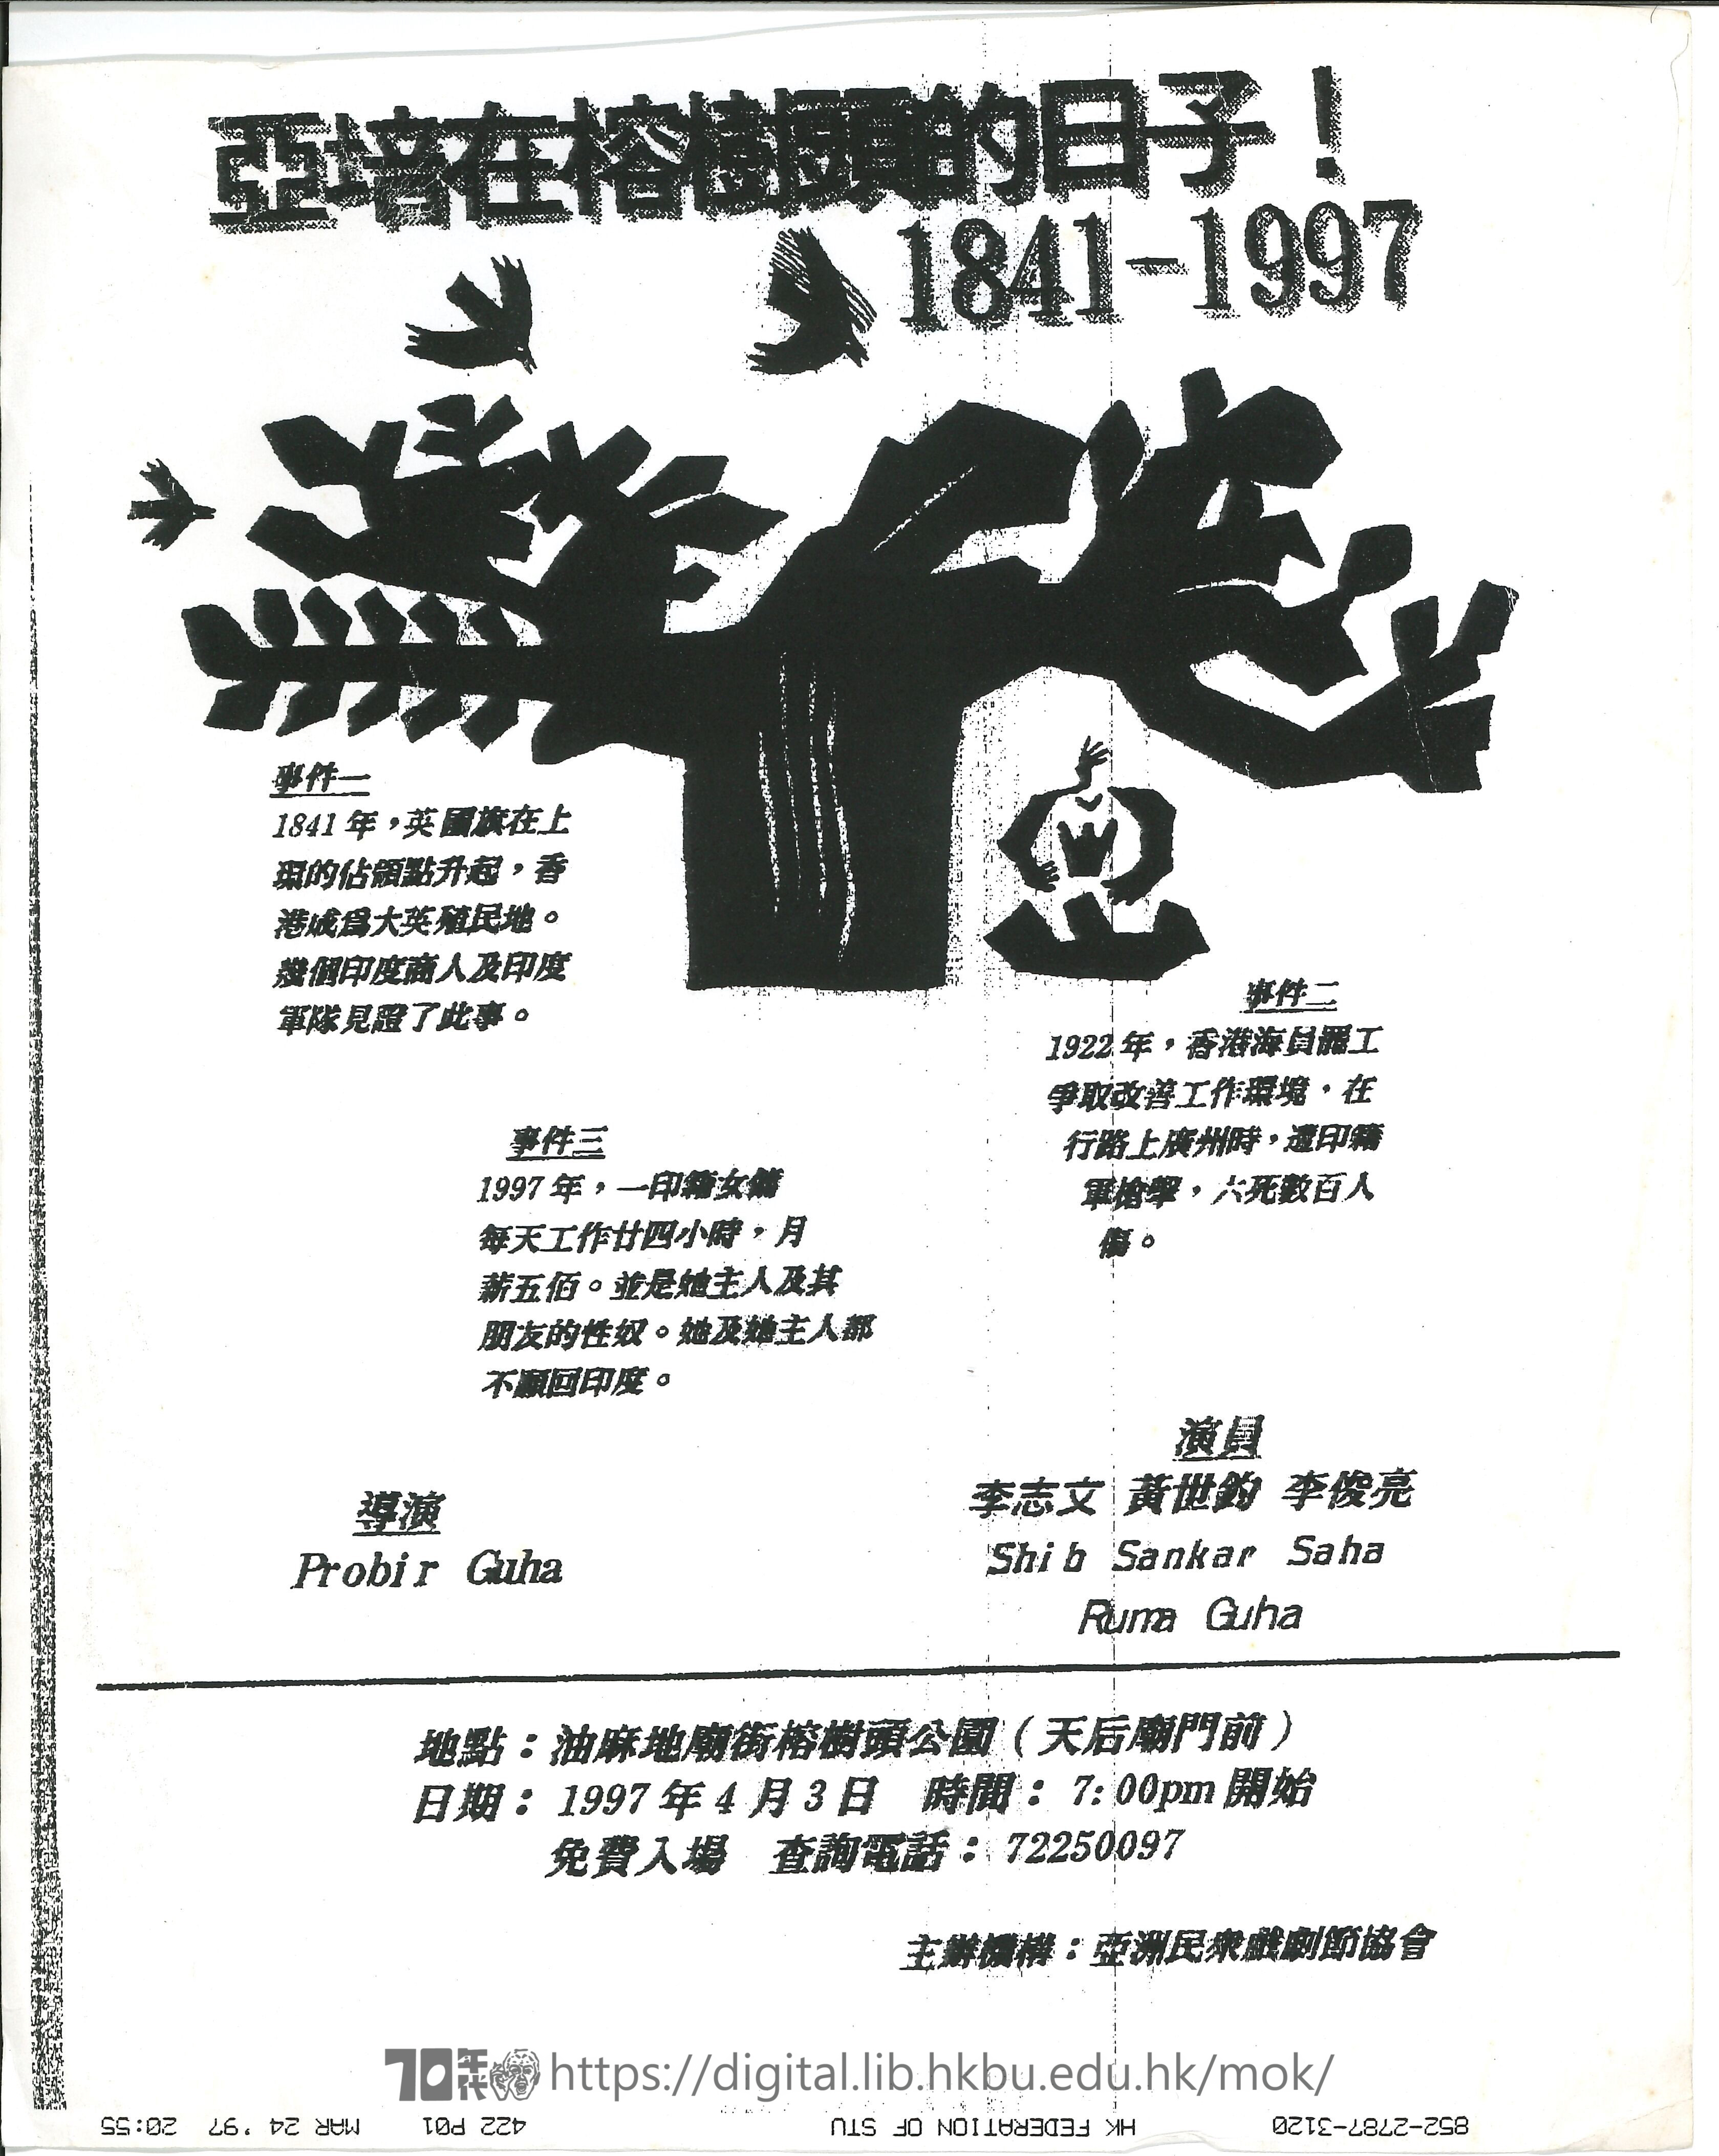 亞培之旅  亞培在榕樹頭的日子！1841-1997 宣傳單張  